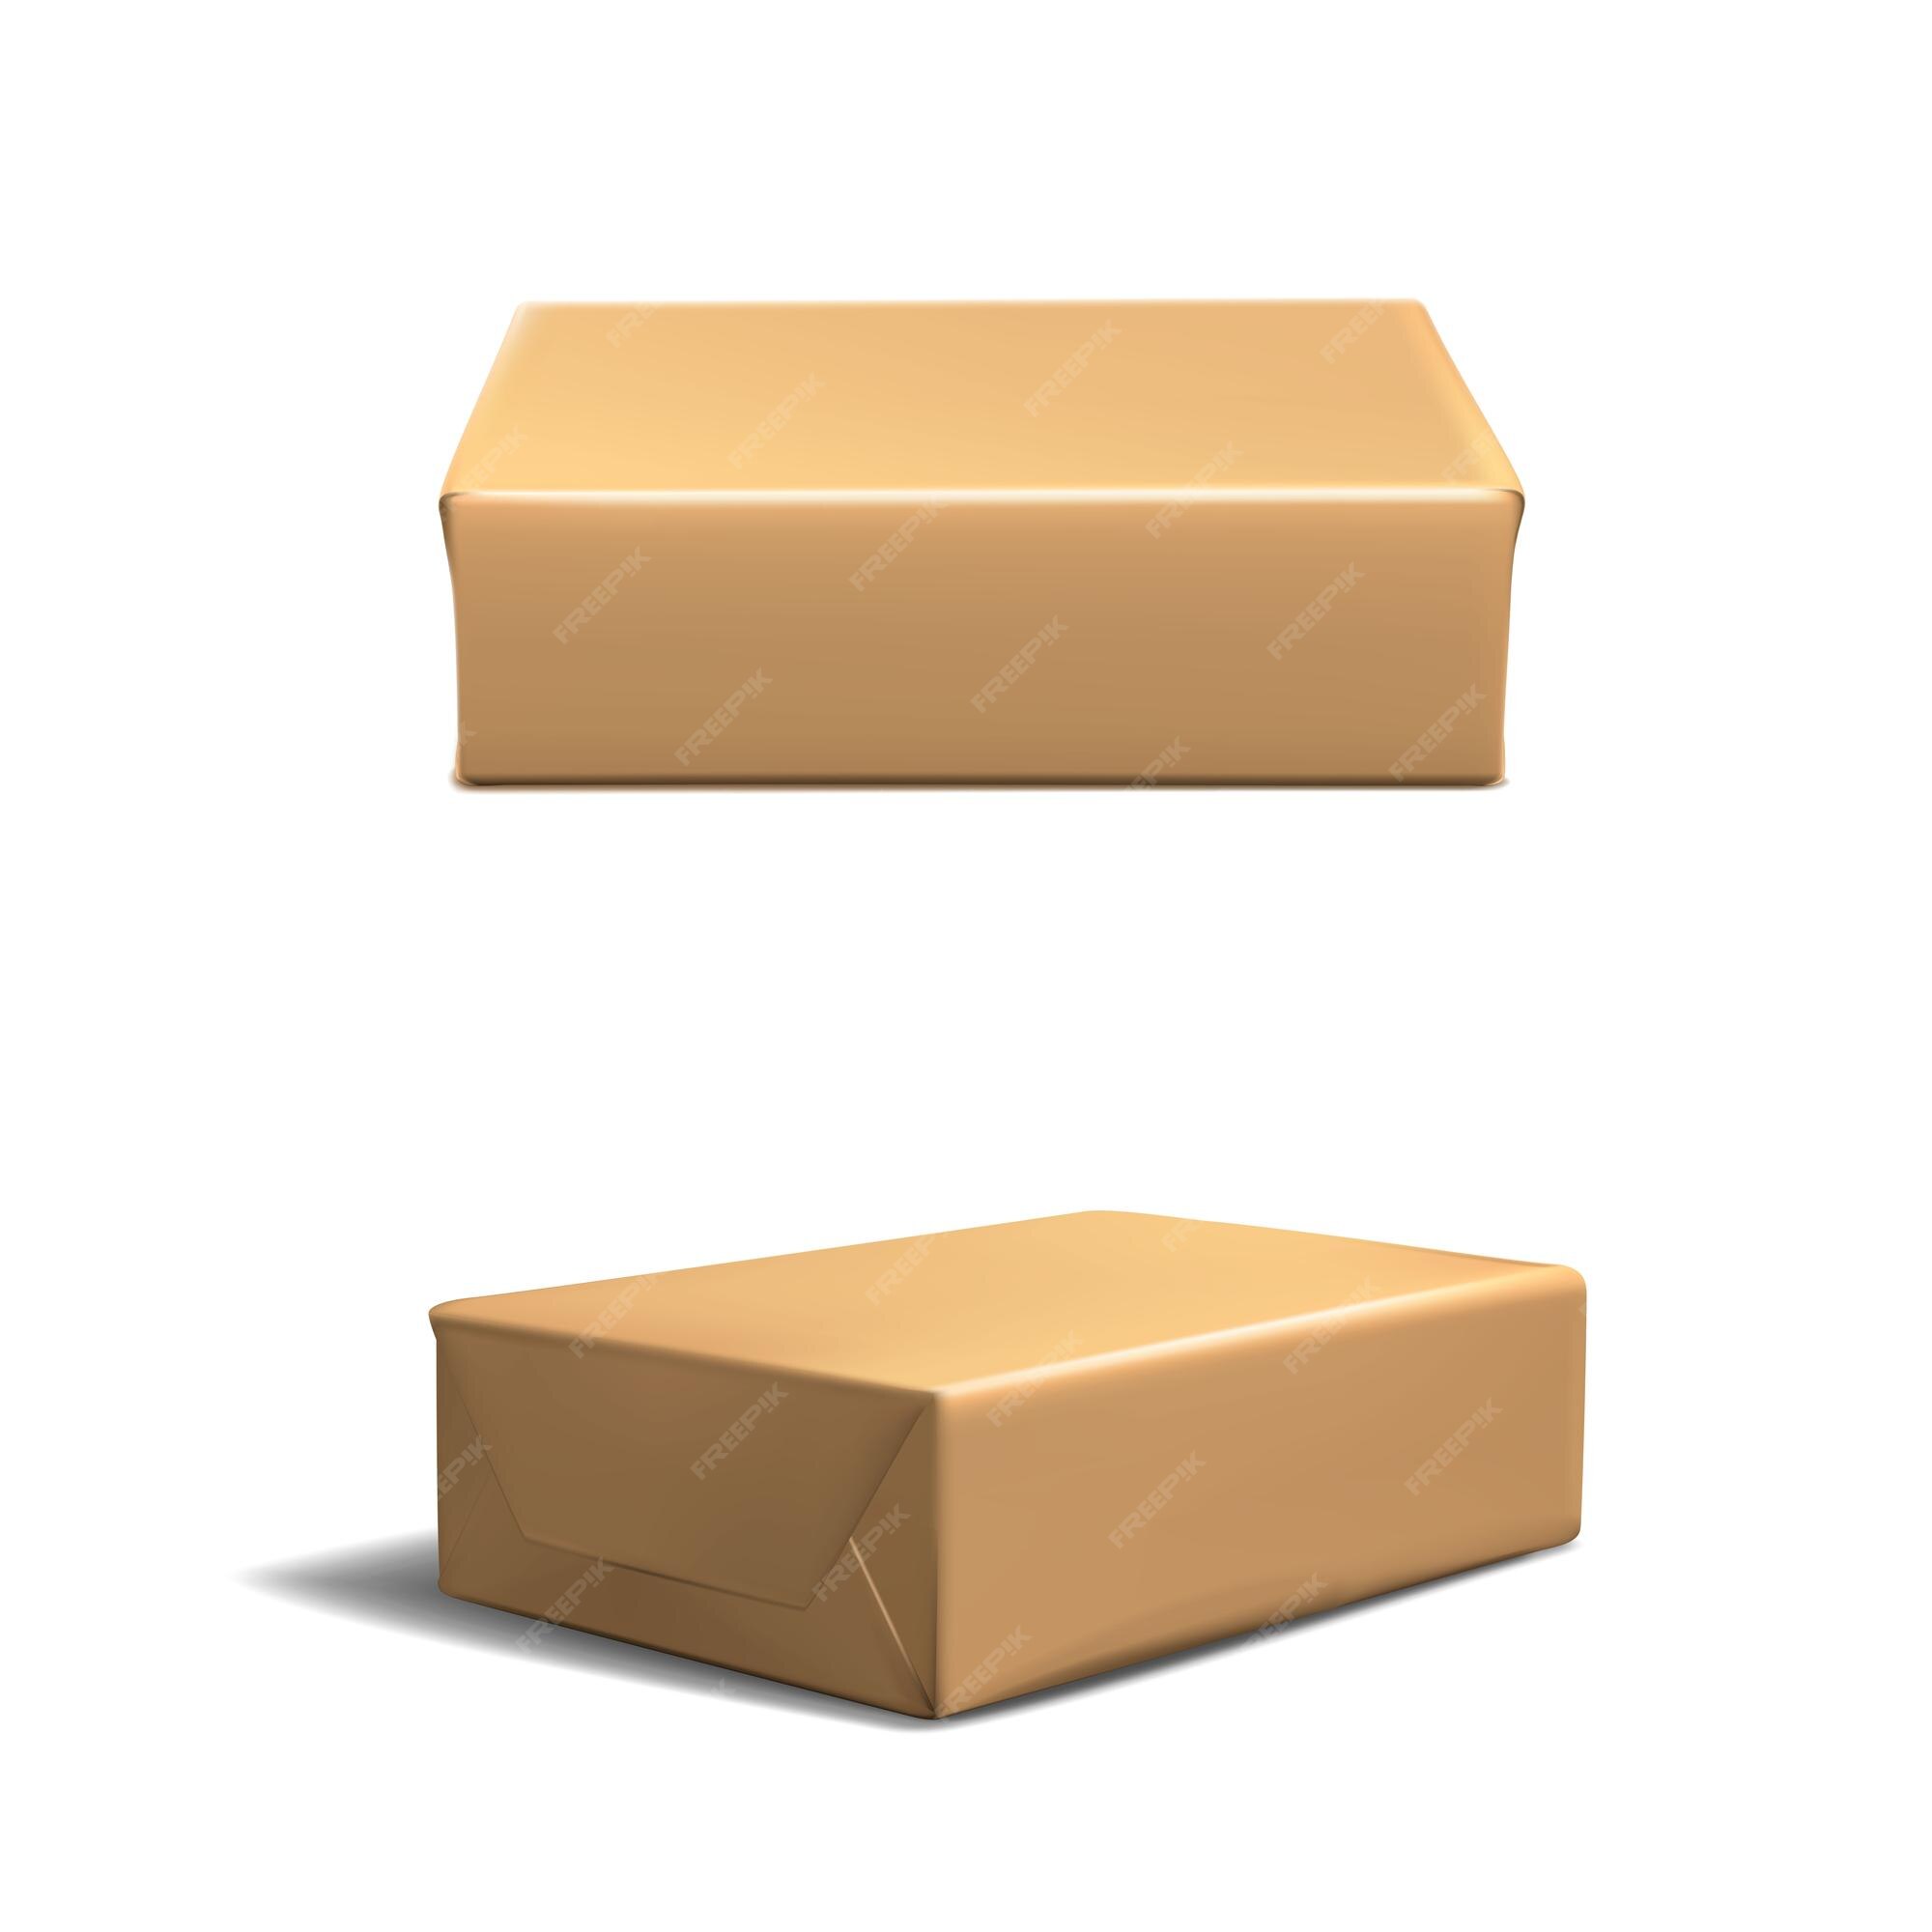 Conjunto de iconos vectoriales conjunto de cajas rectangulares de cartón marrón en vista lateral y superior aislado en la parte posterior blanca | Premium